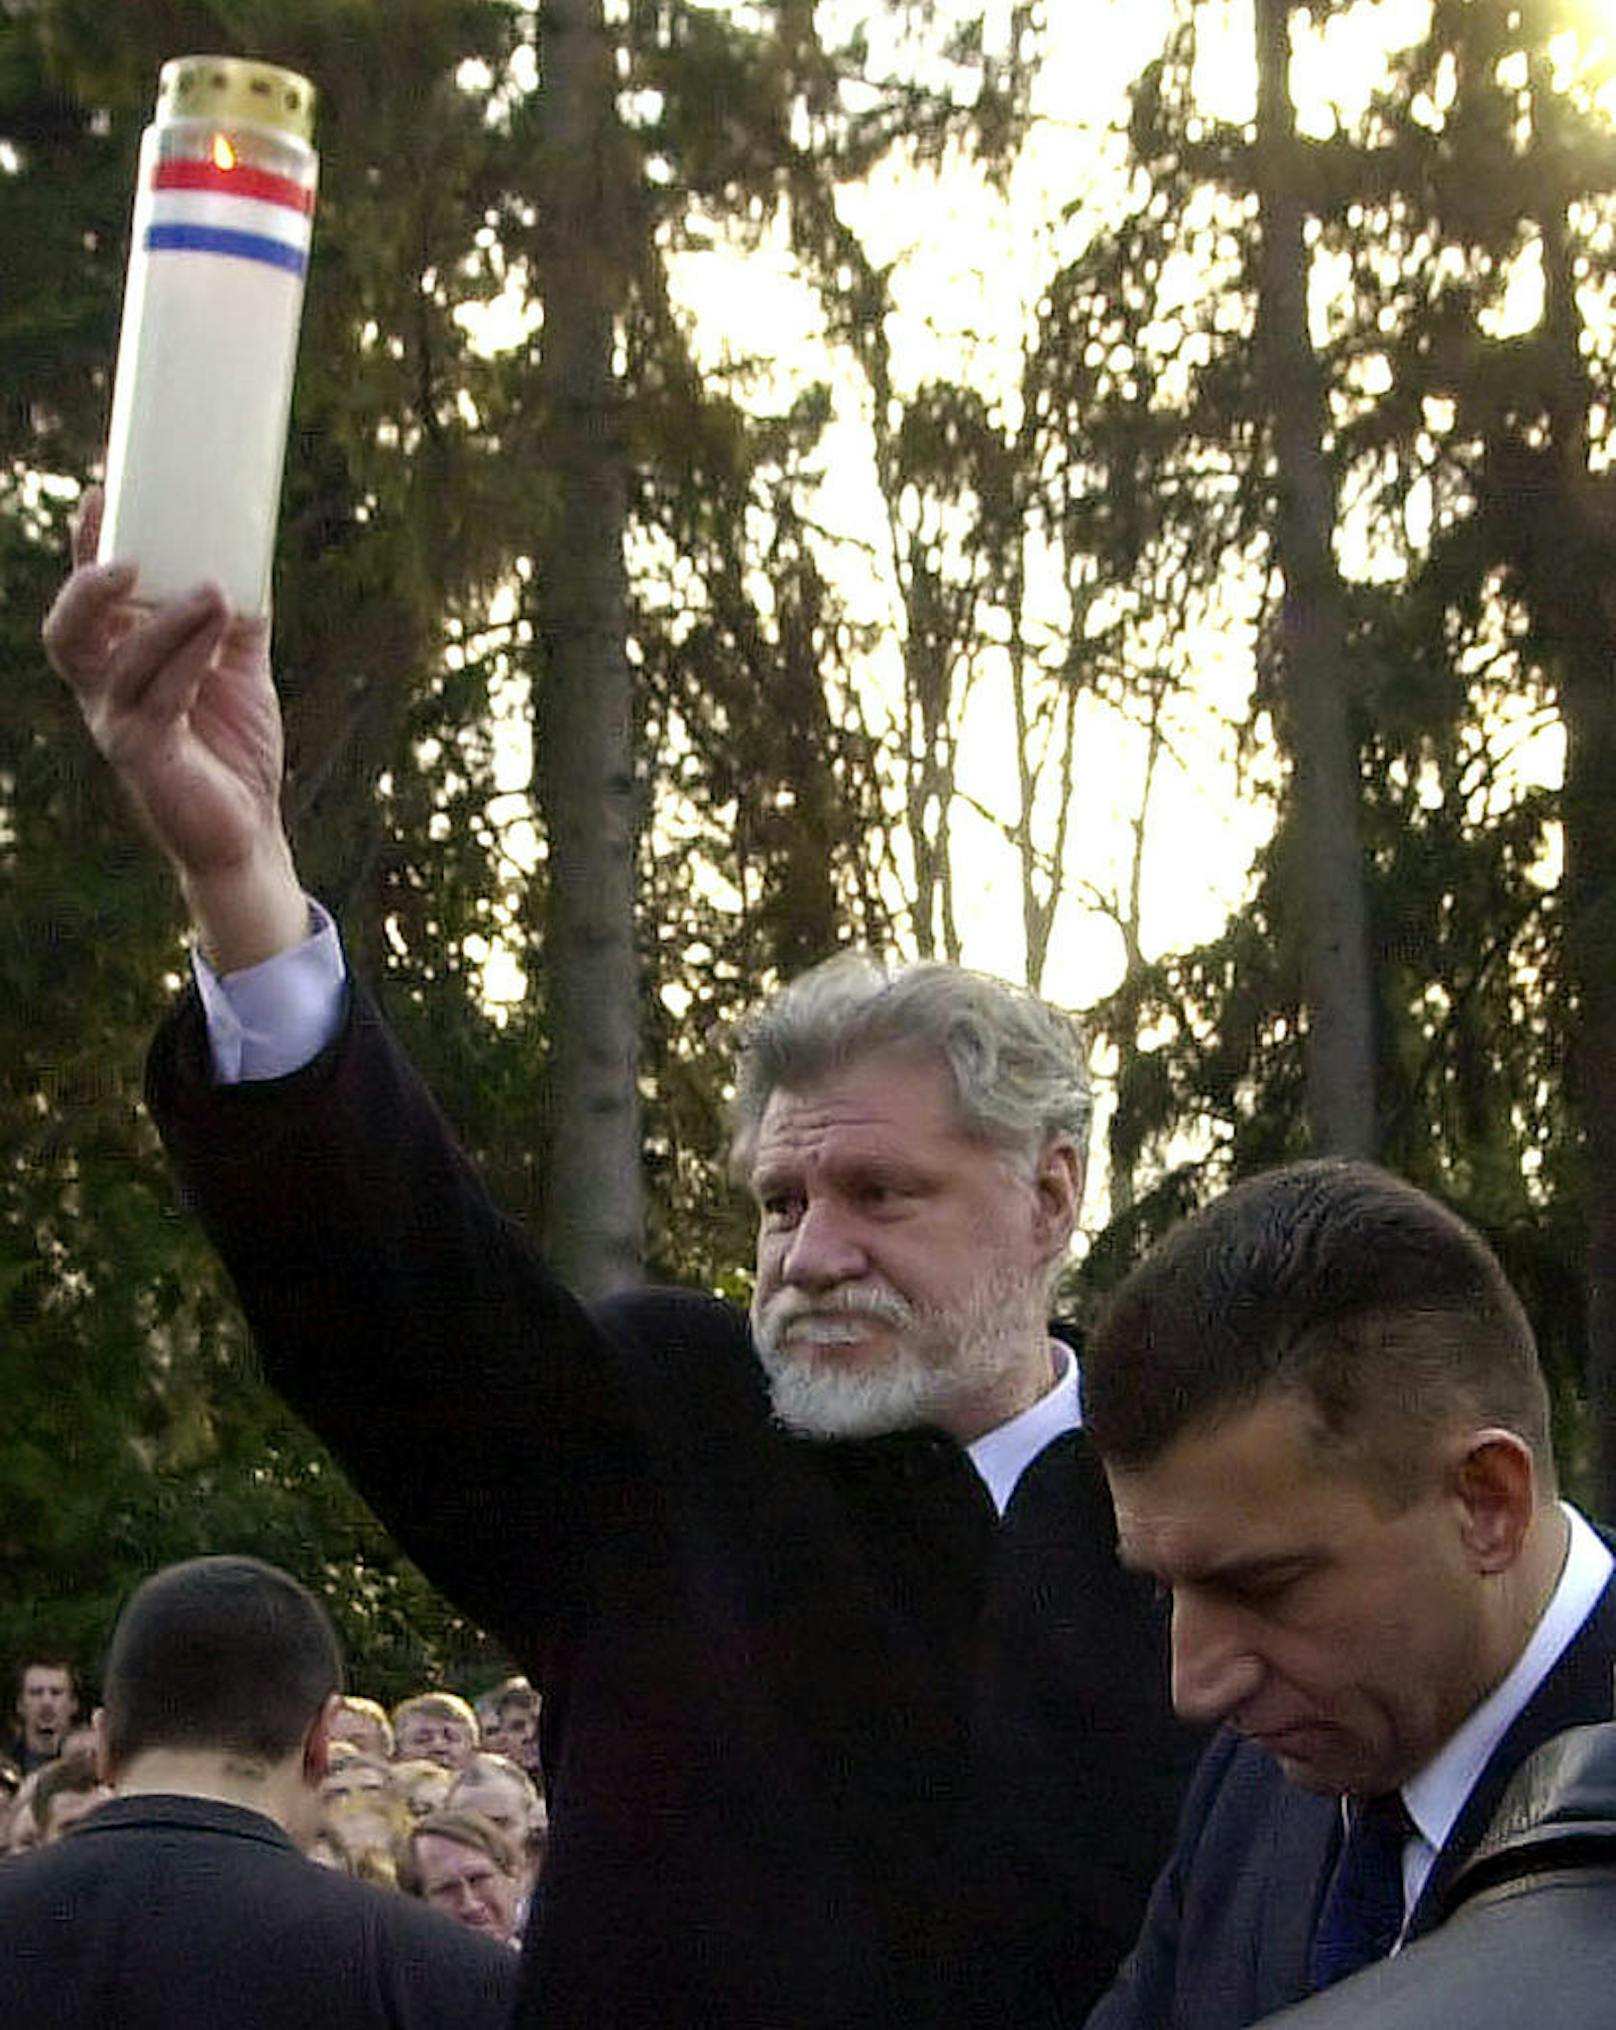 Slobodan Preljak gilt als Kriegsverbrecher: Während des Bosnienkrieges soll er für zahlreiche Ermordungen verantwortlich gewesen sein.